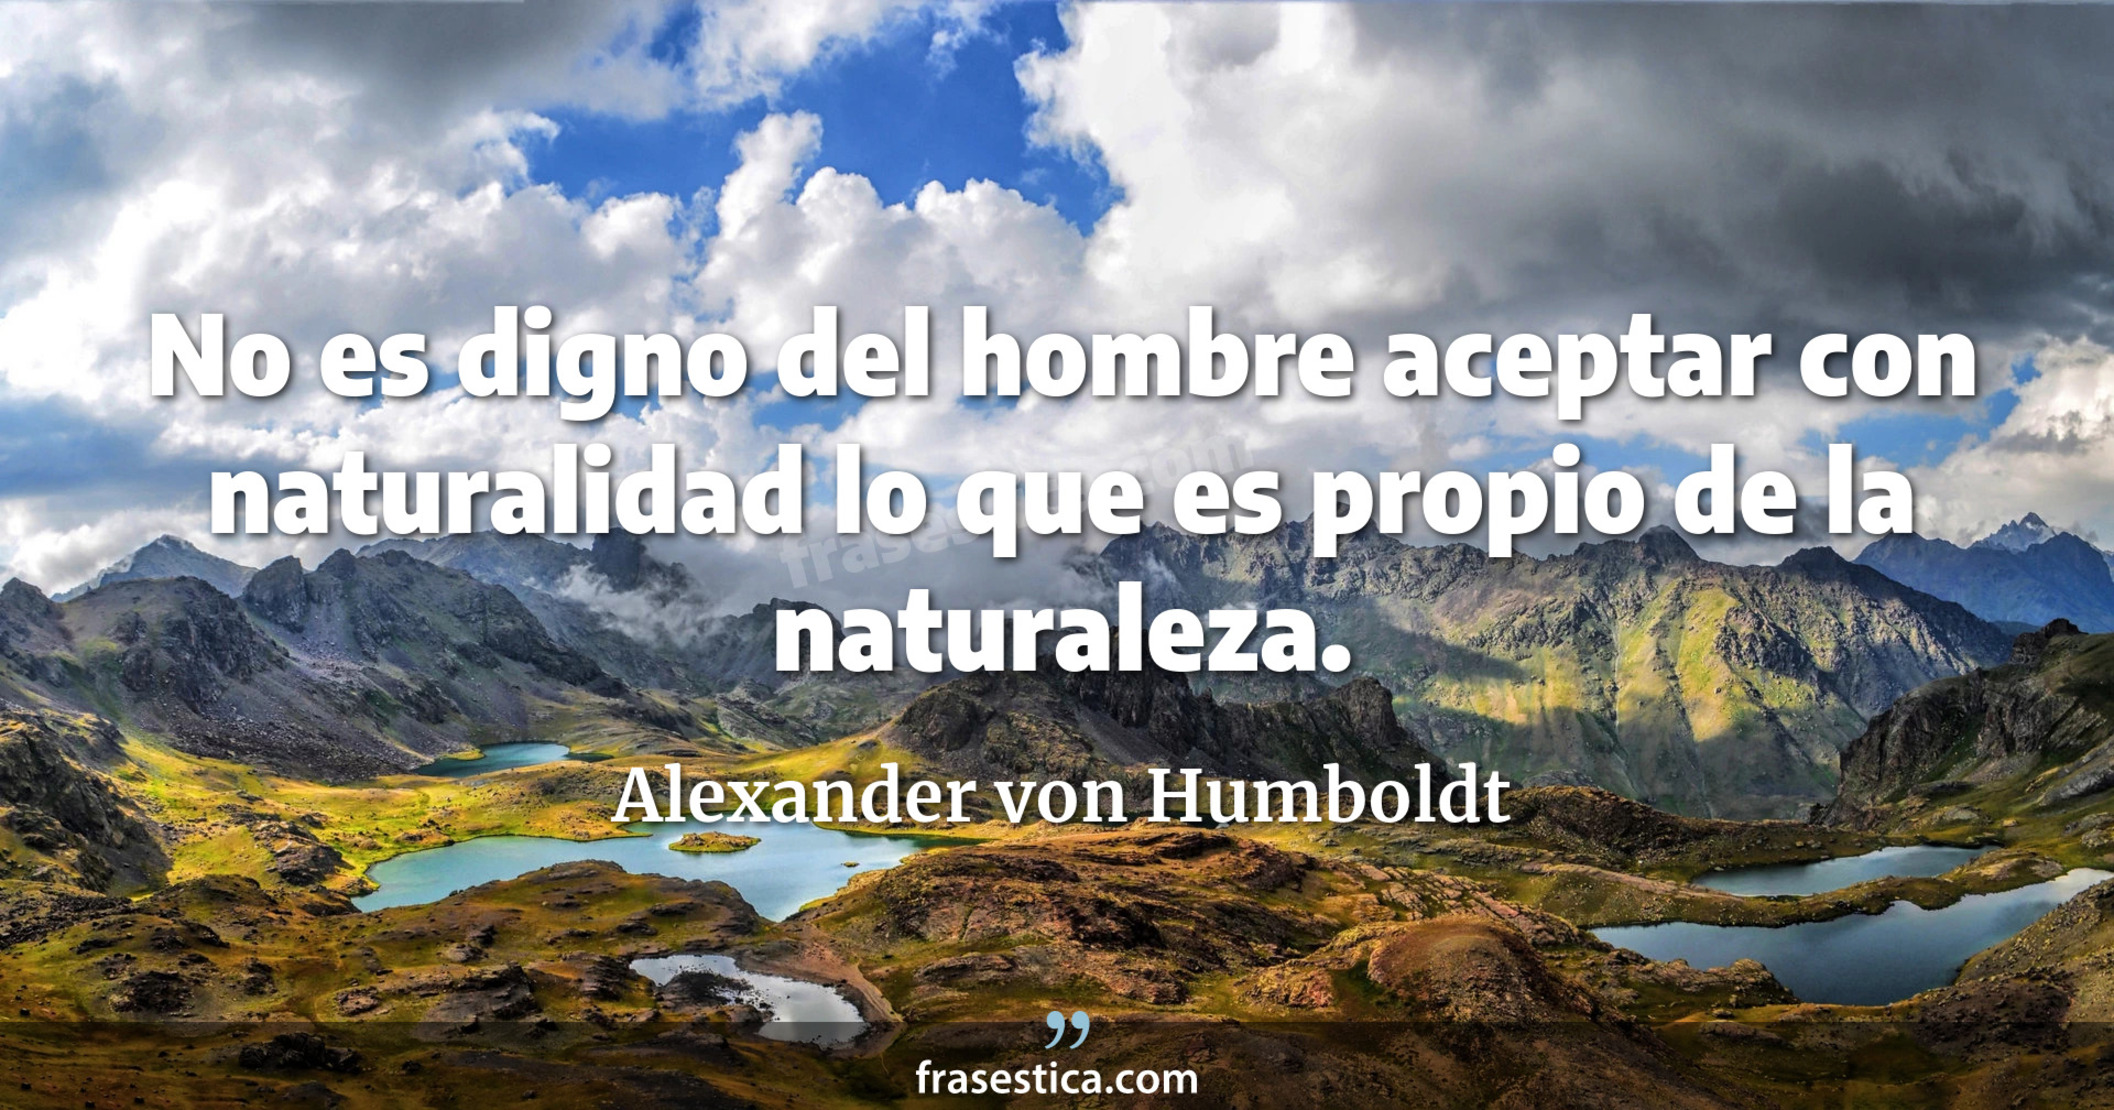 No es digno del hombre aceptar con naturalidad lo que es propio de la naturaleza. - Alexander von Humboldt